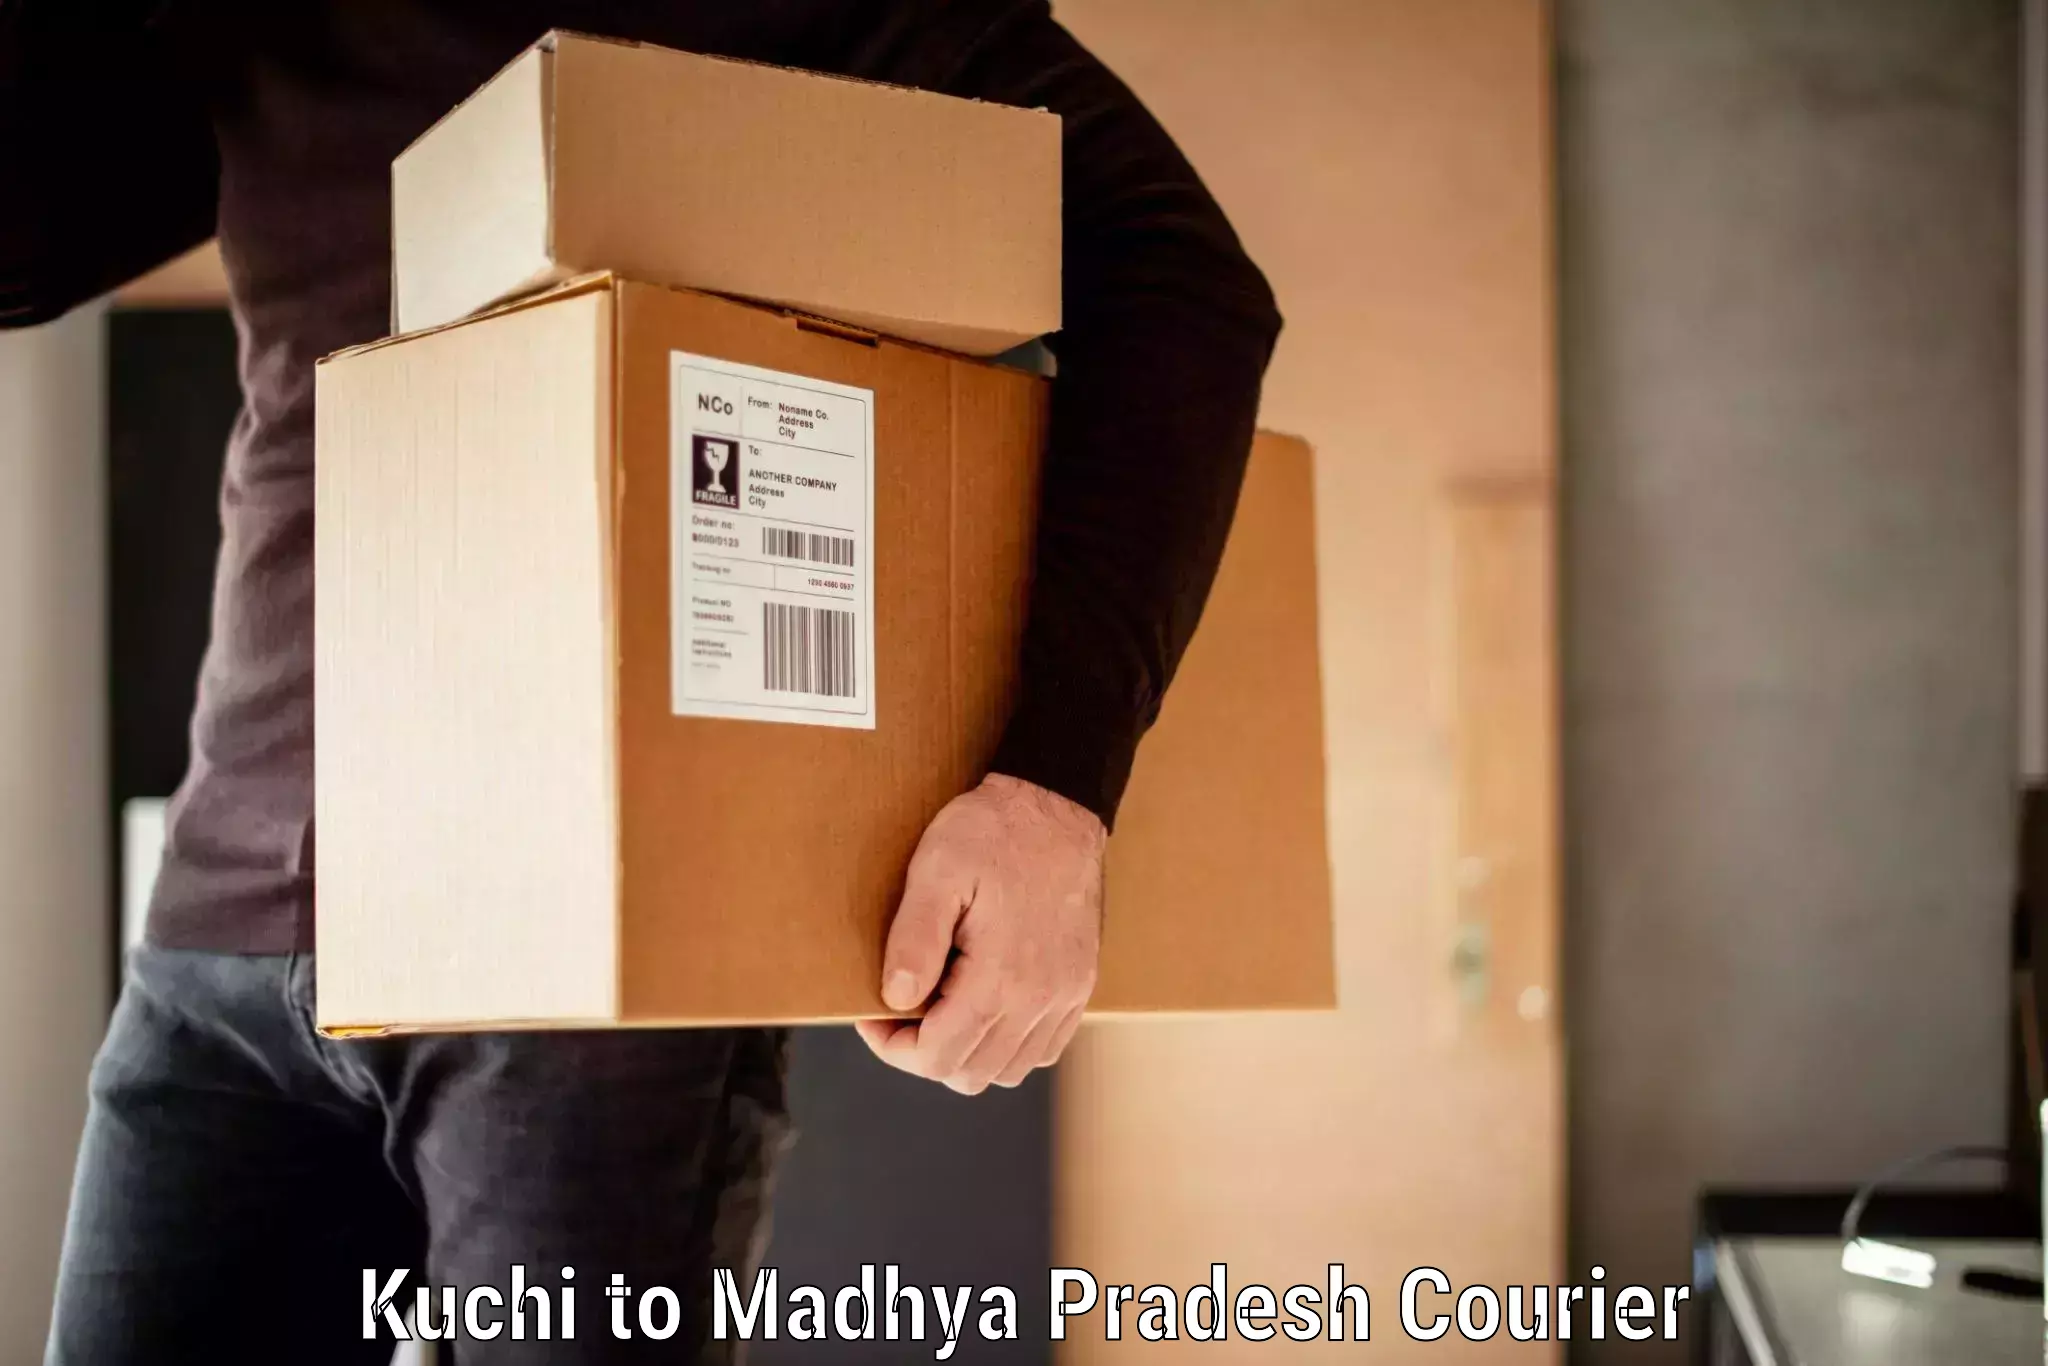 Baggage courier FAQs Kuchi to Madhya Pradesh